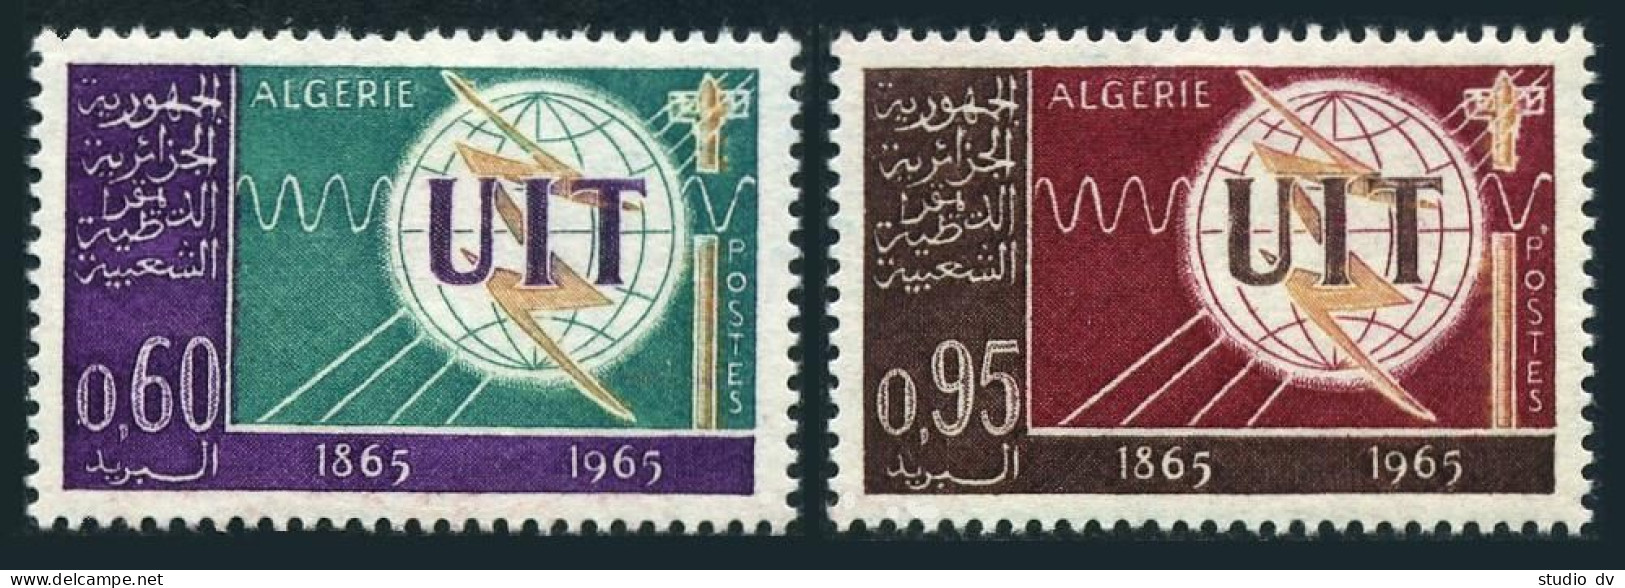 Algeria 339-340, MNH. Michel 439-440. ITU-100, 1965. Emblem. - Algeria (1962-...)